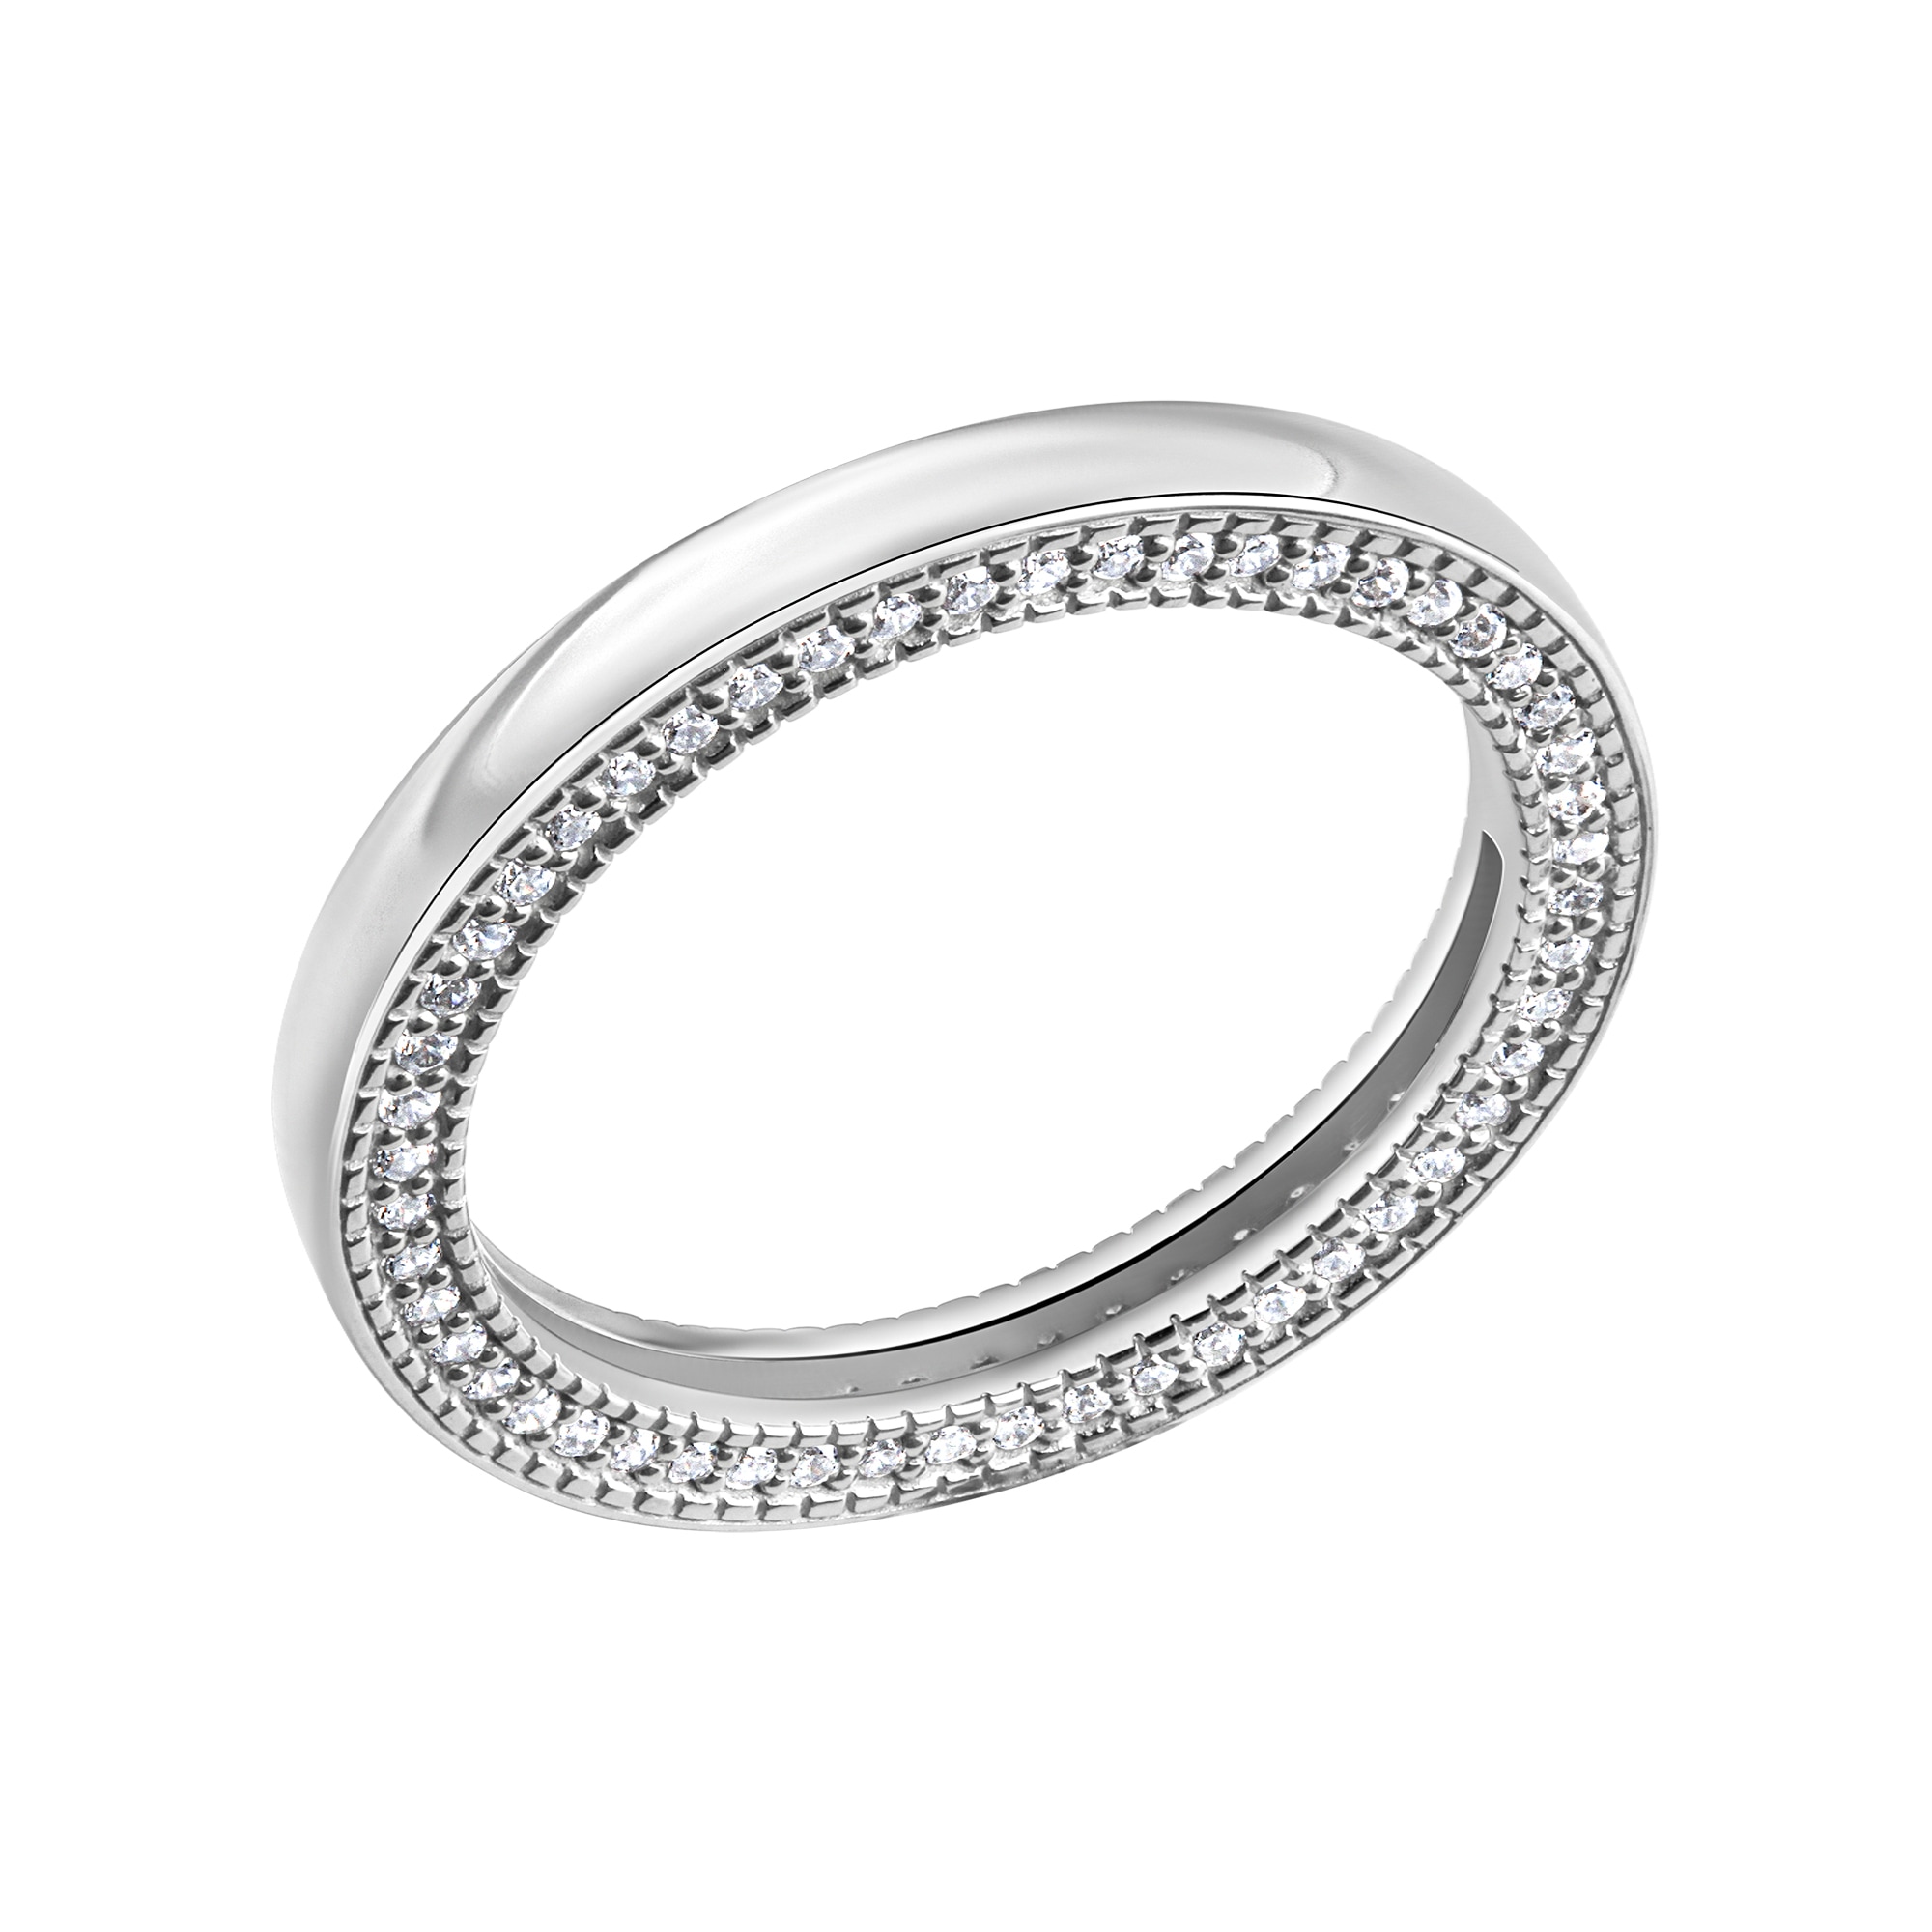 CELESTA Fingerring »925 weißen online bestellen Silber Zirkoniasteinen« mit